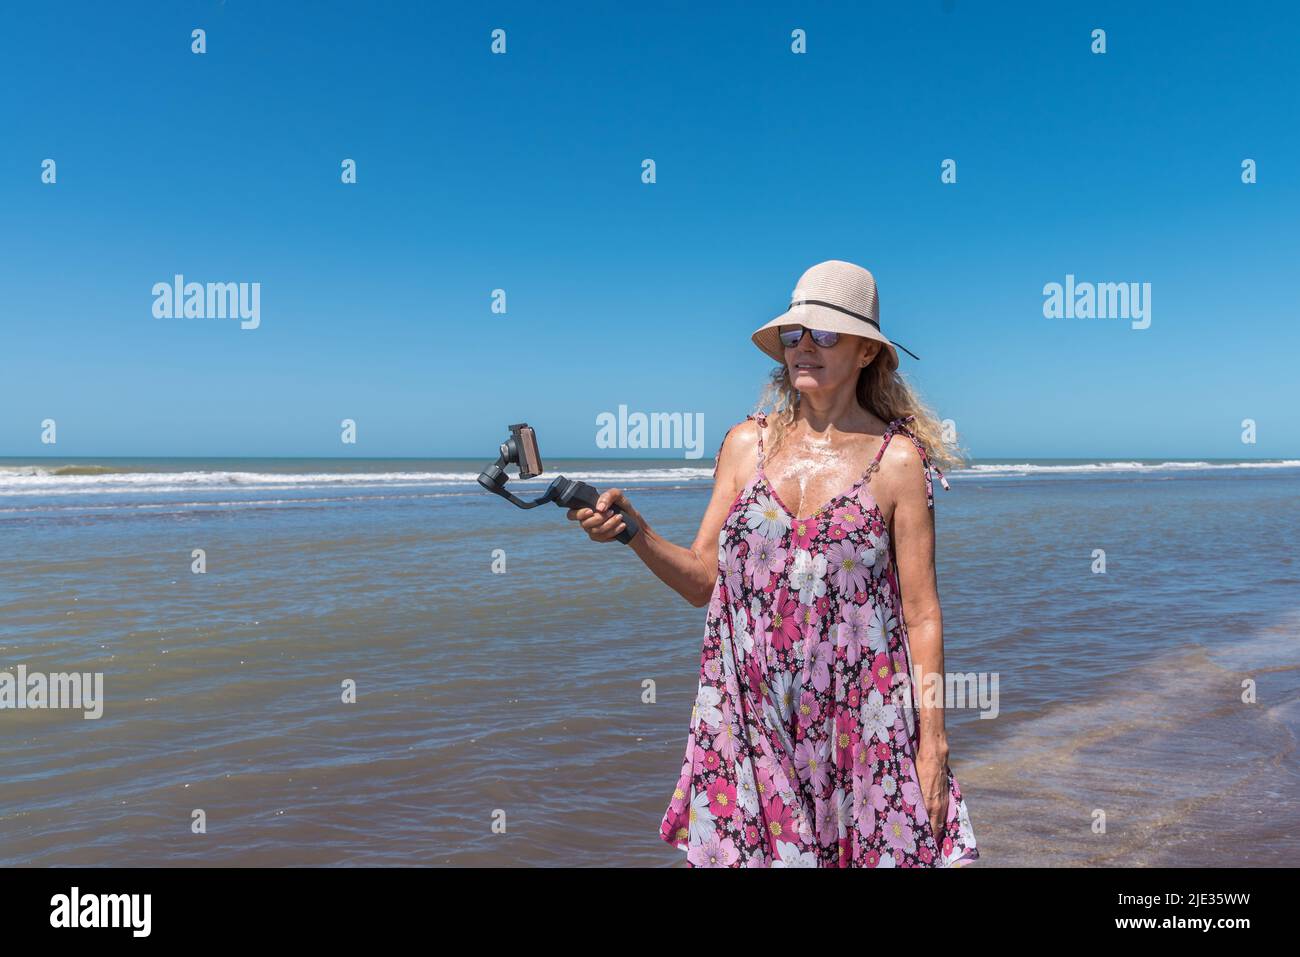 Donna con un cappello in piedi sulla spiaggia mentre filma con un mobile fissato su uno stabilizzatore gimbal Foto Stock